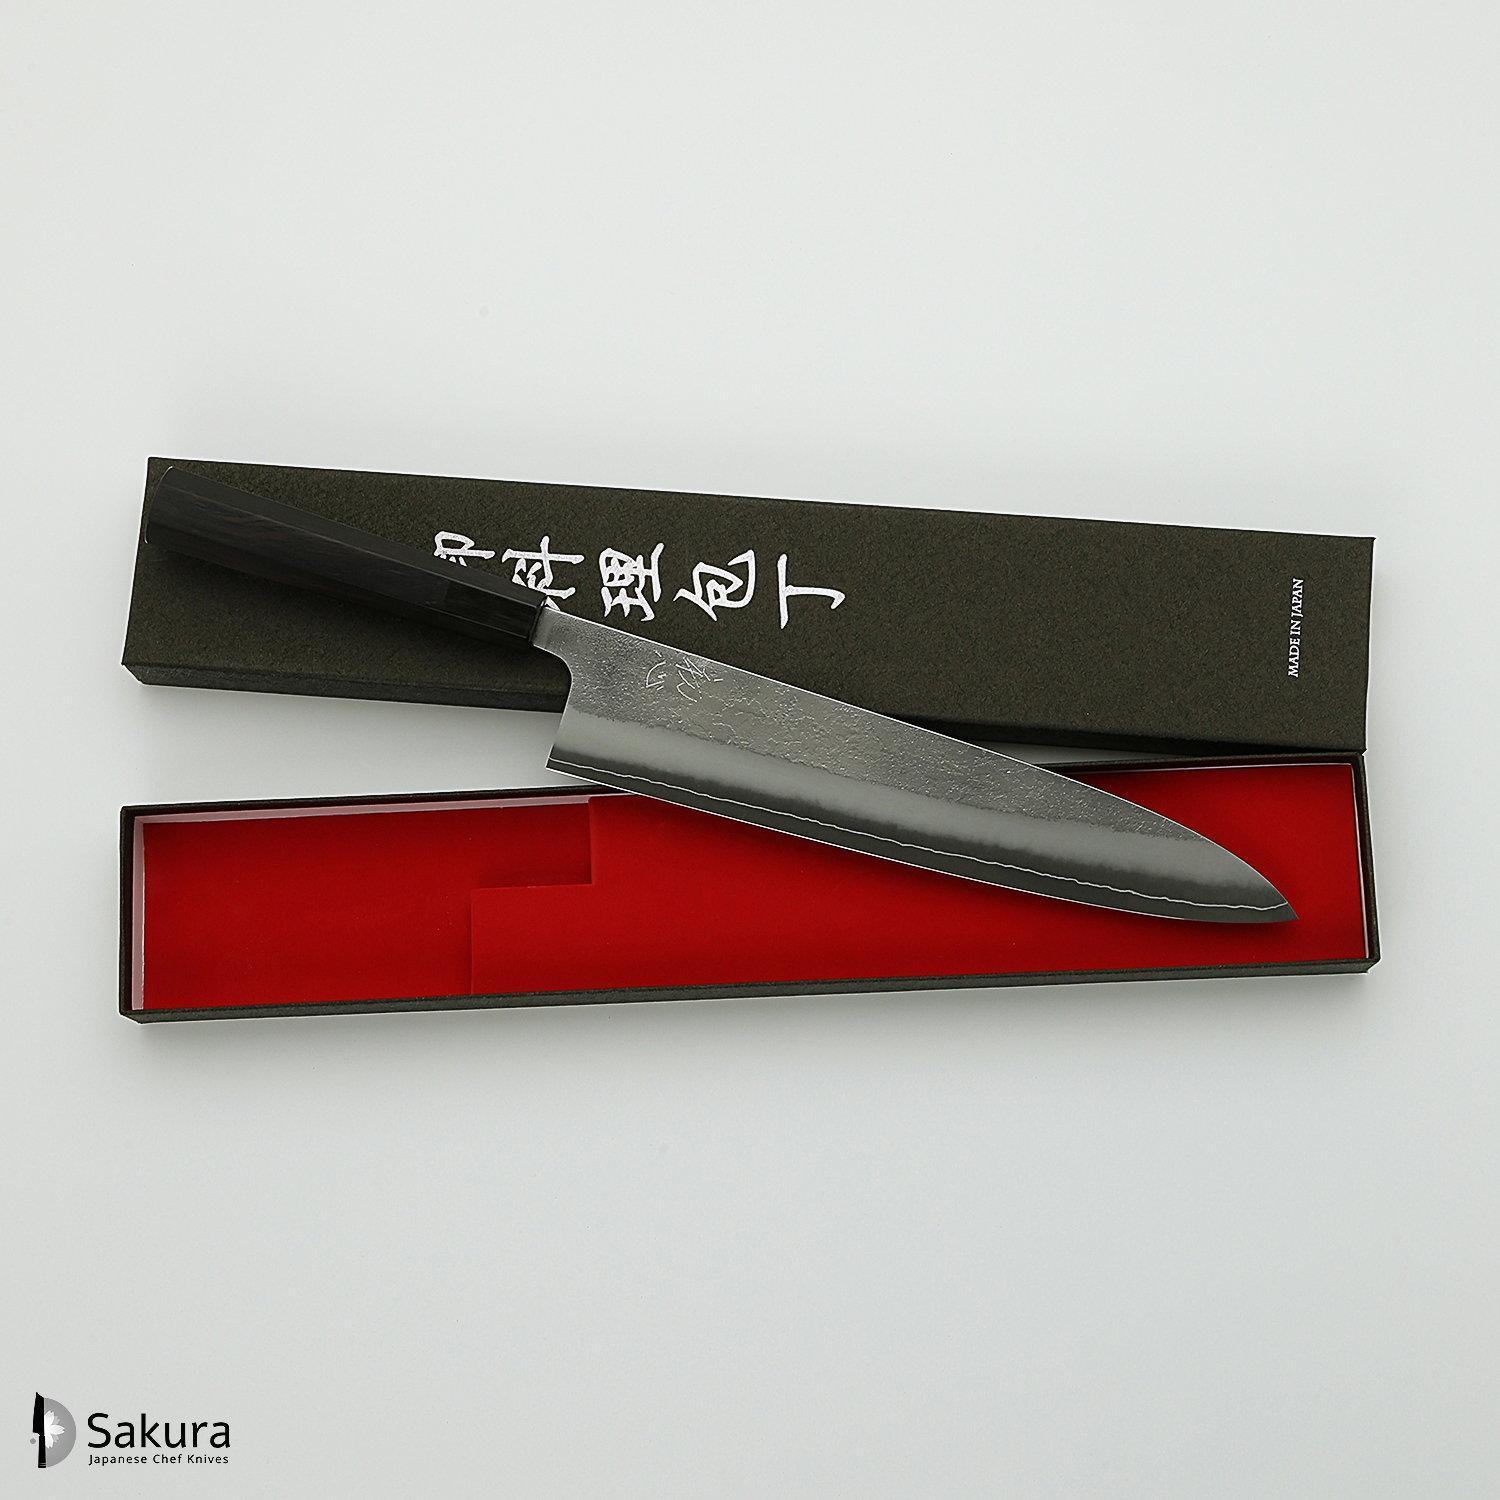 סכין שף רב-תכליתית גִּיוּטוֹ 270מ״מ מחושלת בעבודת יד 3 שכבות: פלדת פחמן יפנית מתקדמת מסוג SKD עטופה פלדת אל-חלד גימור קורורוצ׳י מט חיספוס טבעי יושיקאנה יפן